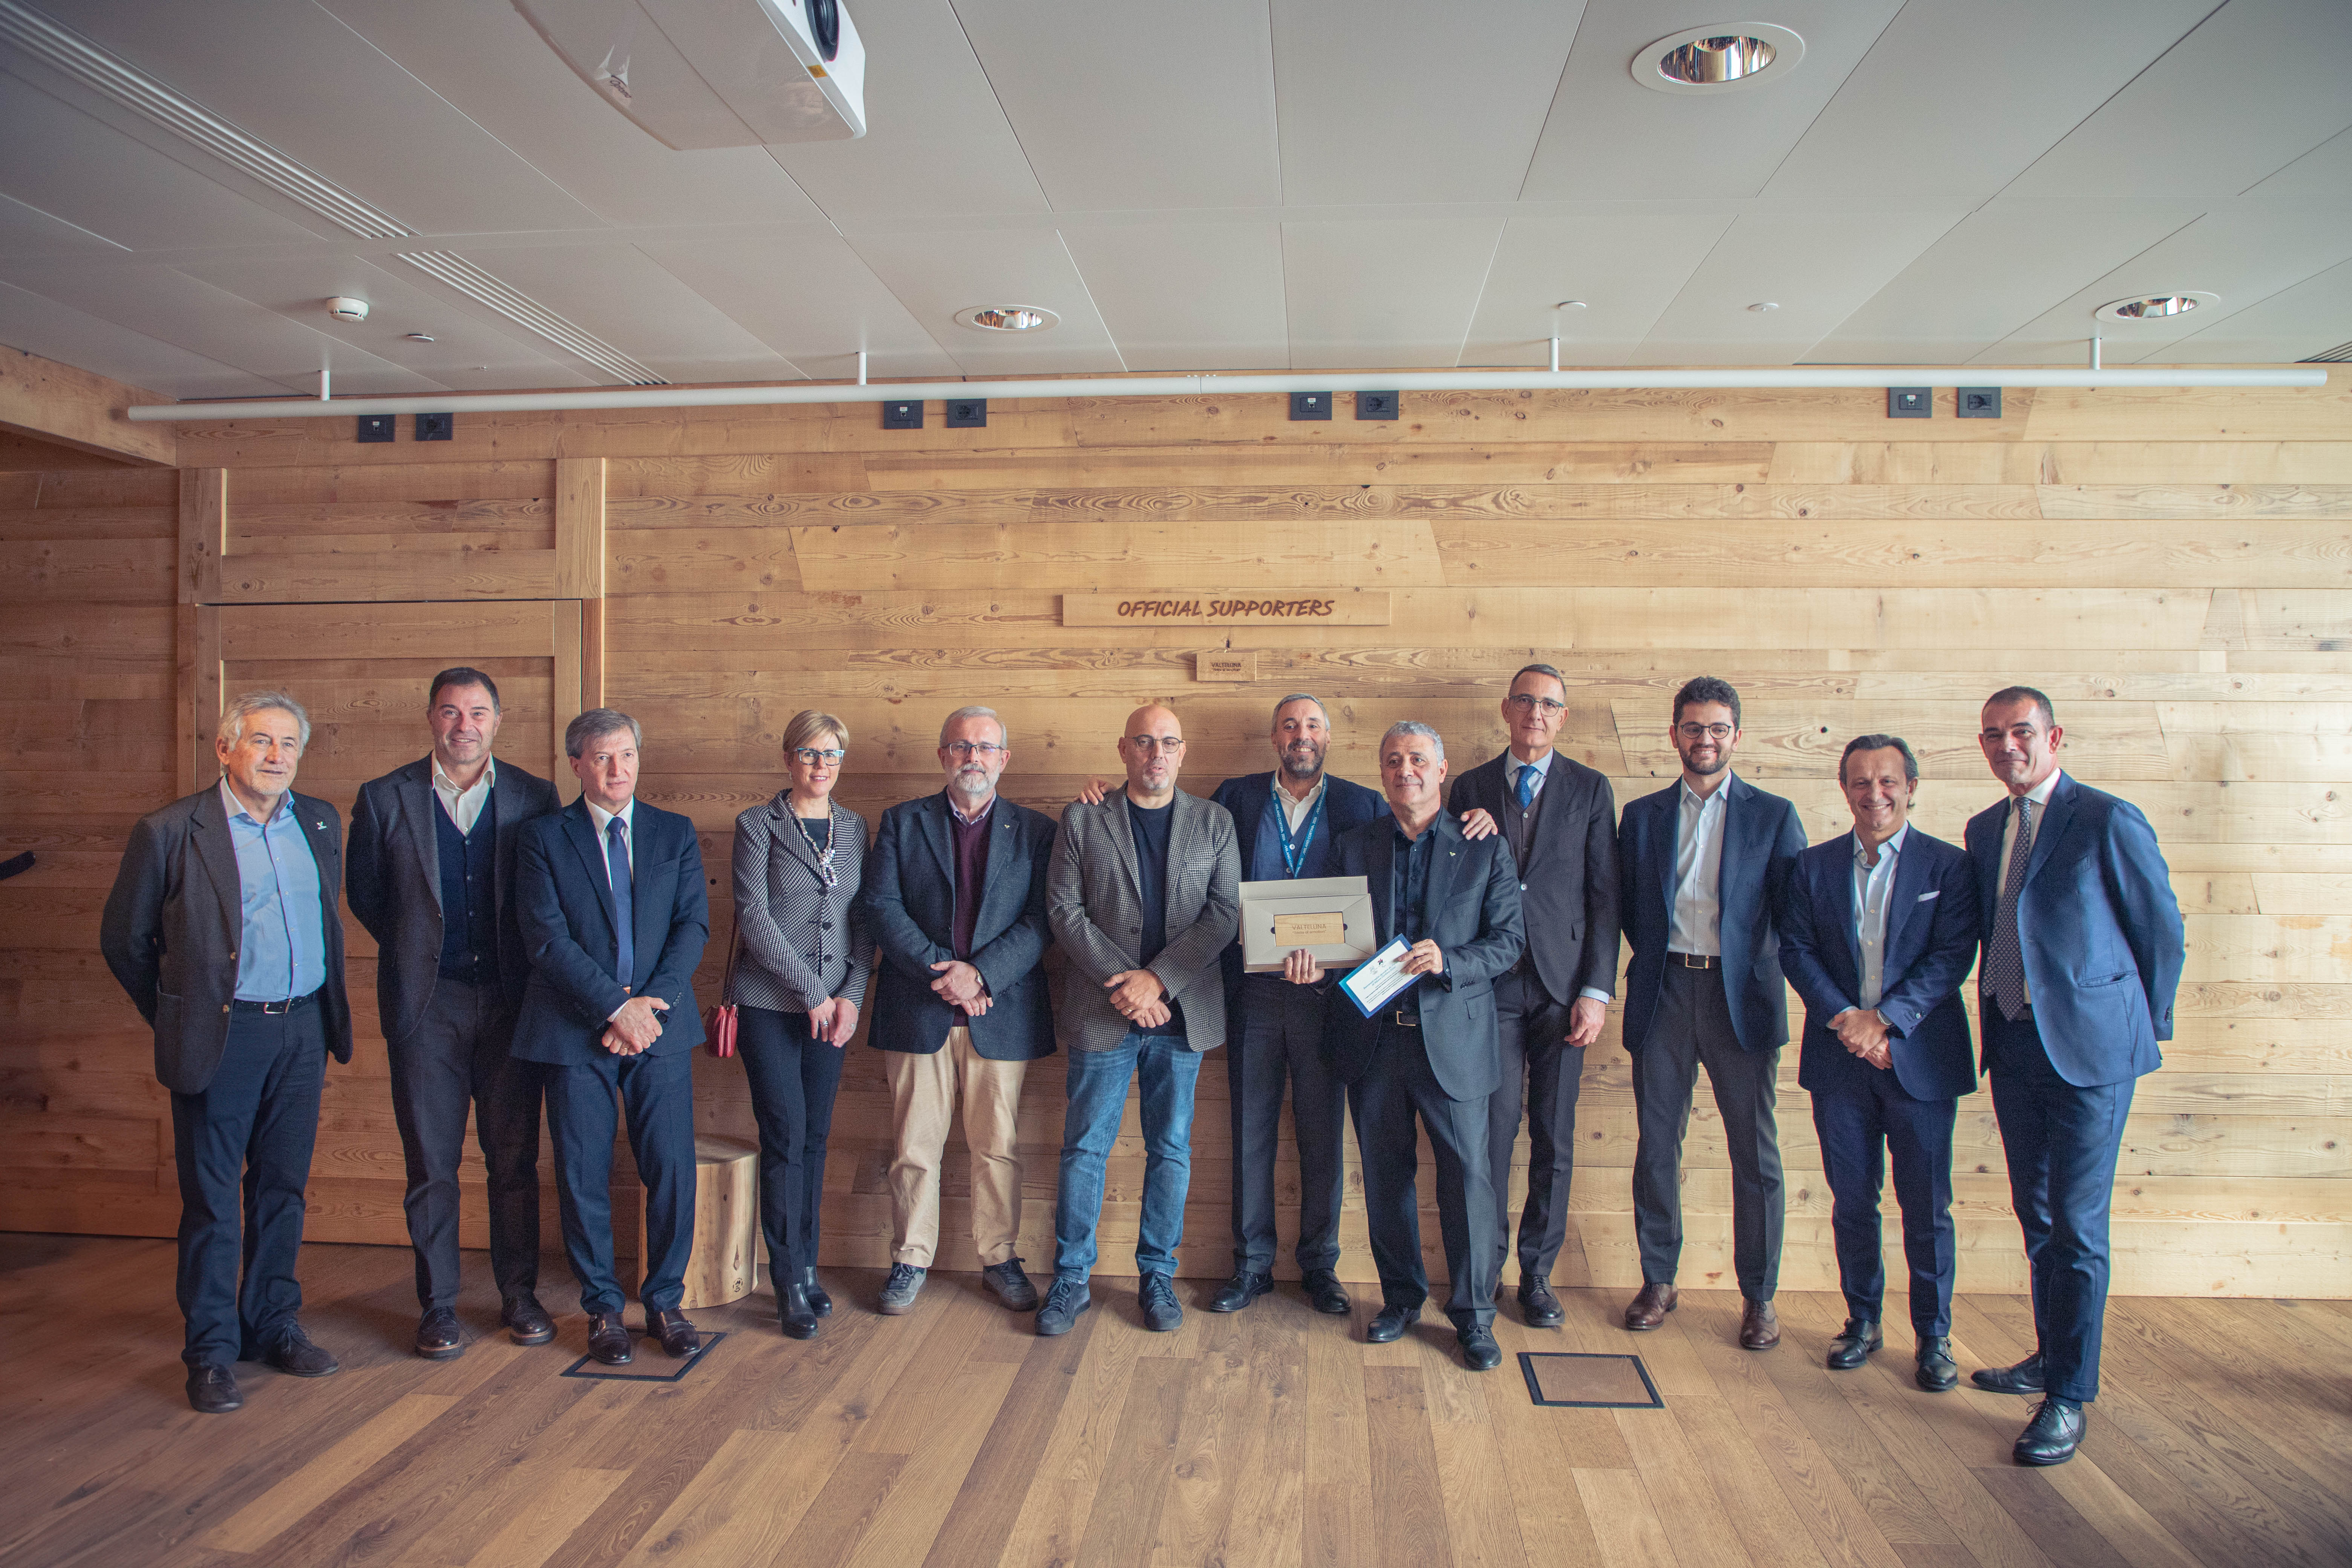 Gruppenfoto mit den wichtigsten Vertretern von Milano Cortina 2026 und dem Konsortium Valtellina